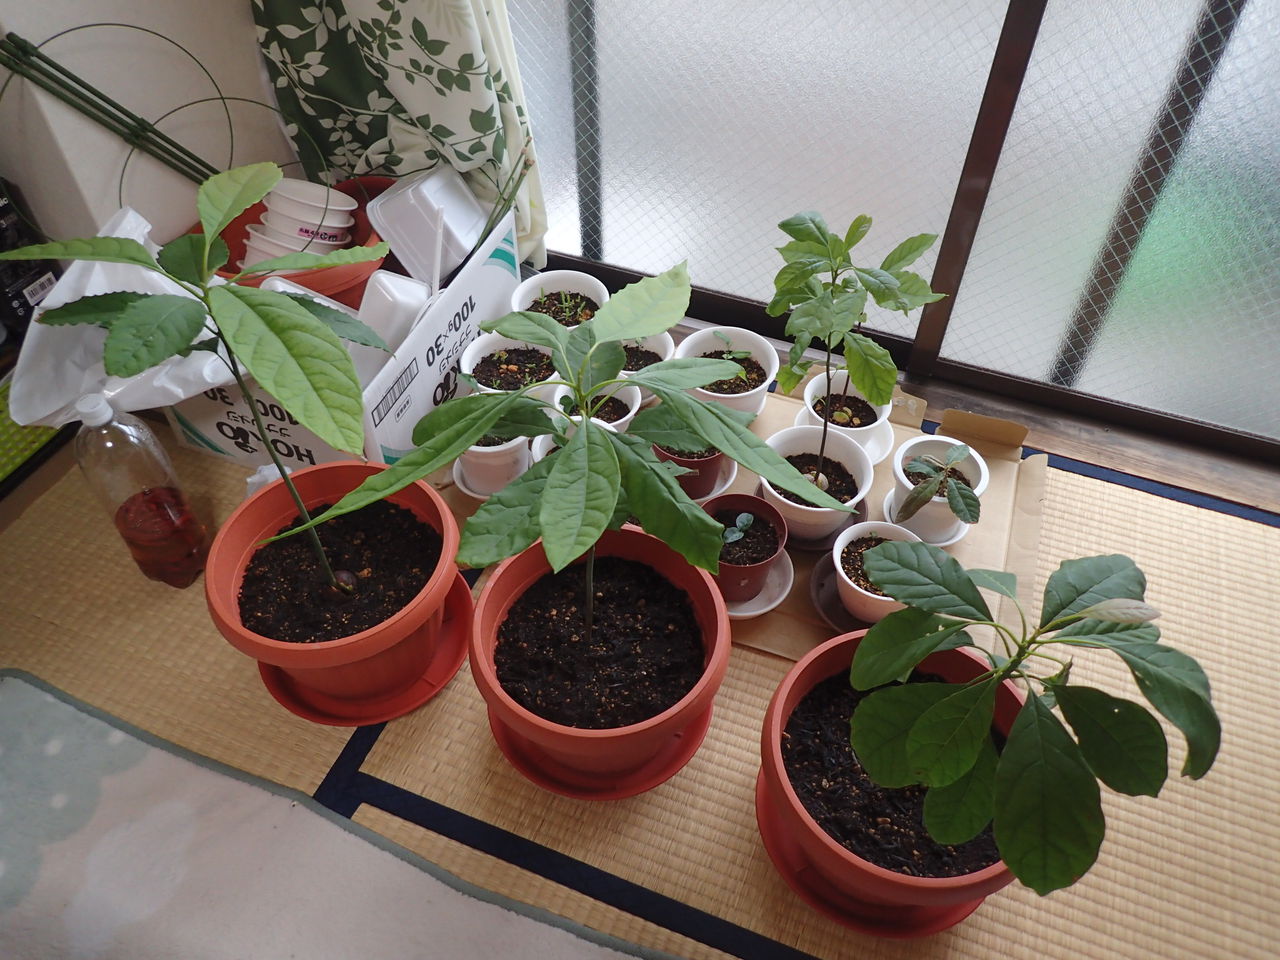 台風が来ているので植木を屋内に避難した 伊豆で自然と暮らしたい